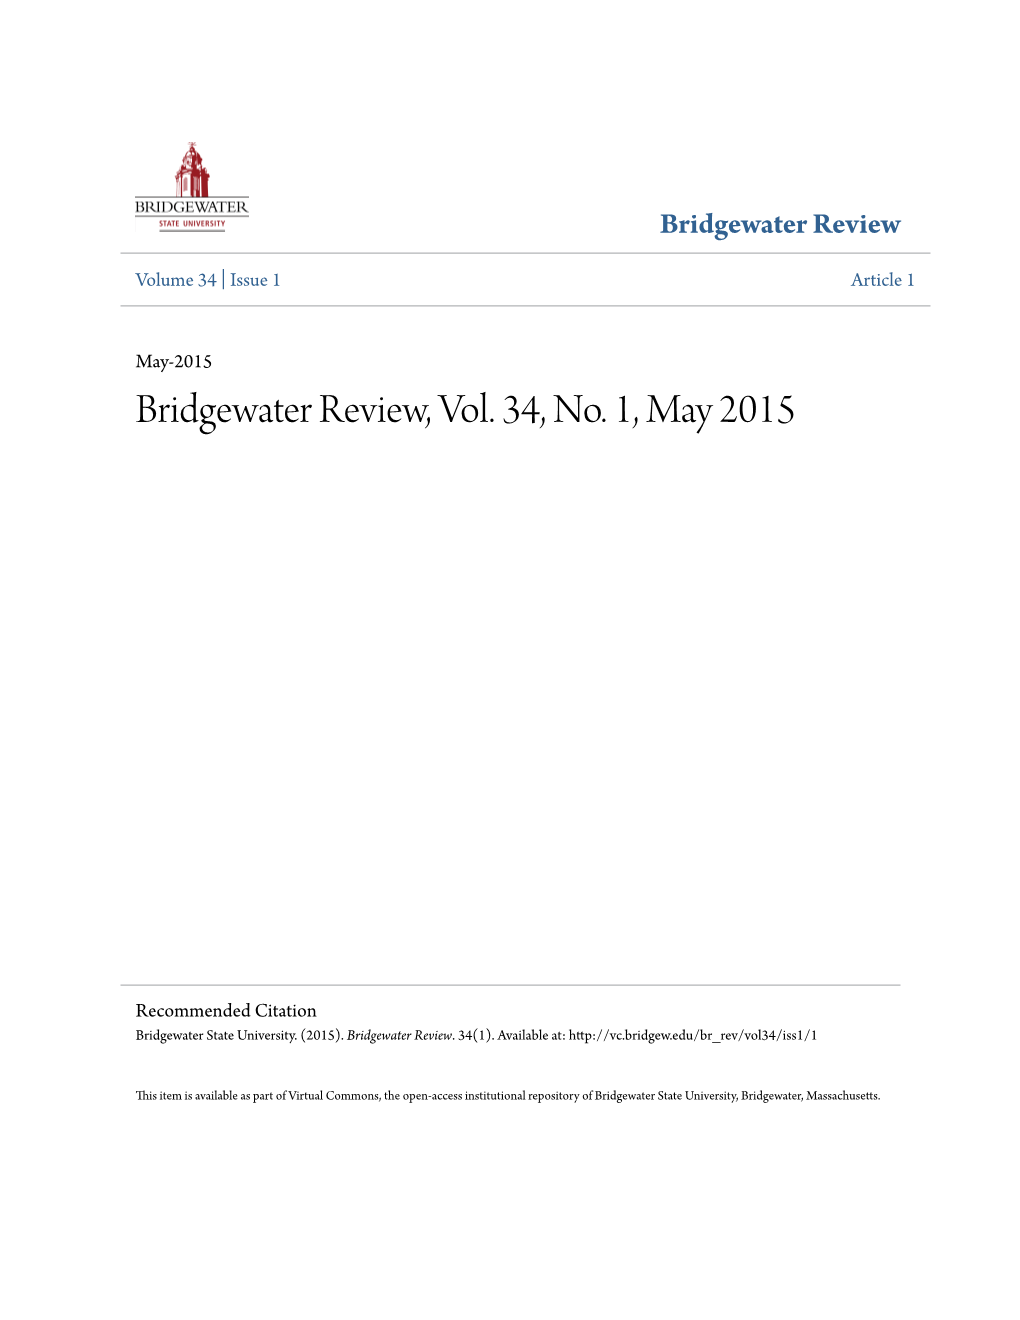 Bridgewater Review, Vol. 34, No. 1, May 2015